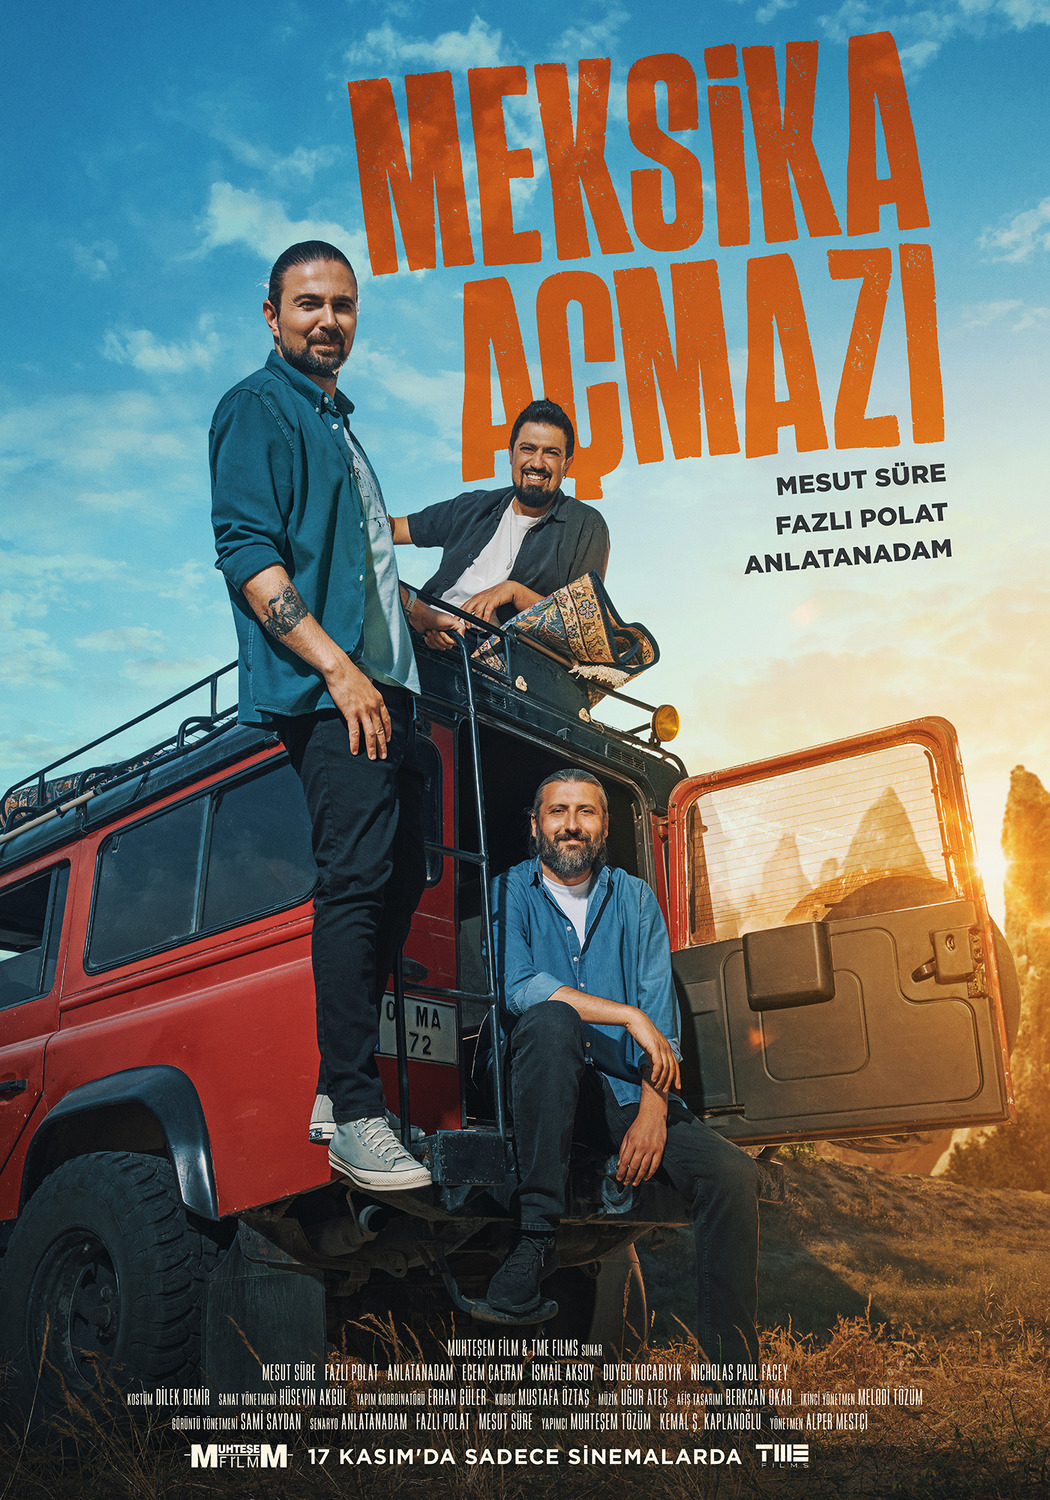 Meksika Açmazi (#2 of 6): Extra Large Movie Poster Image - IMP Awards